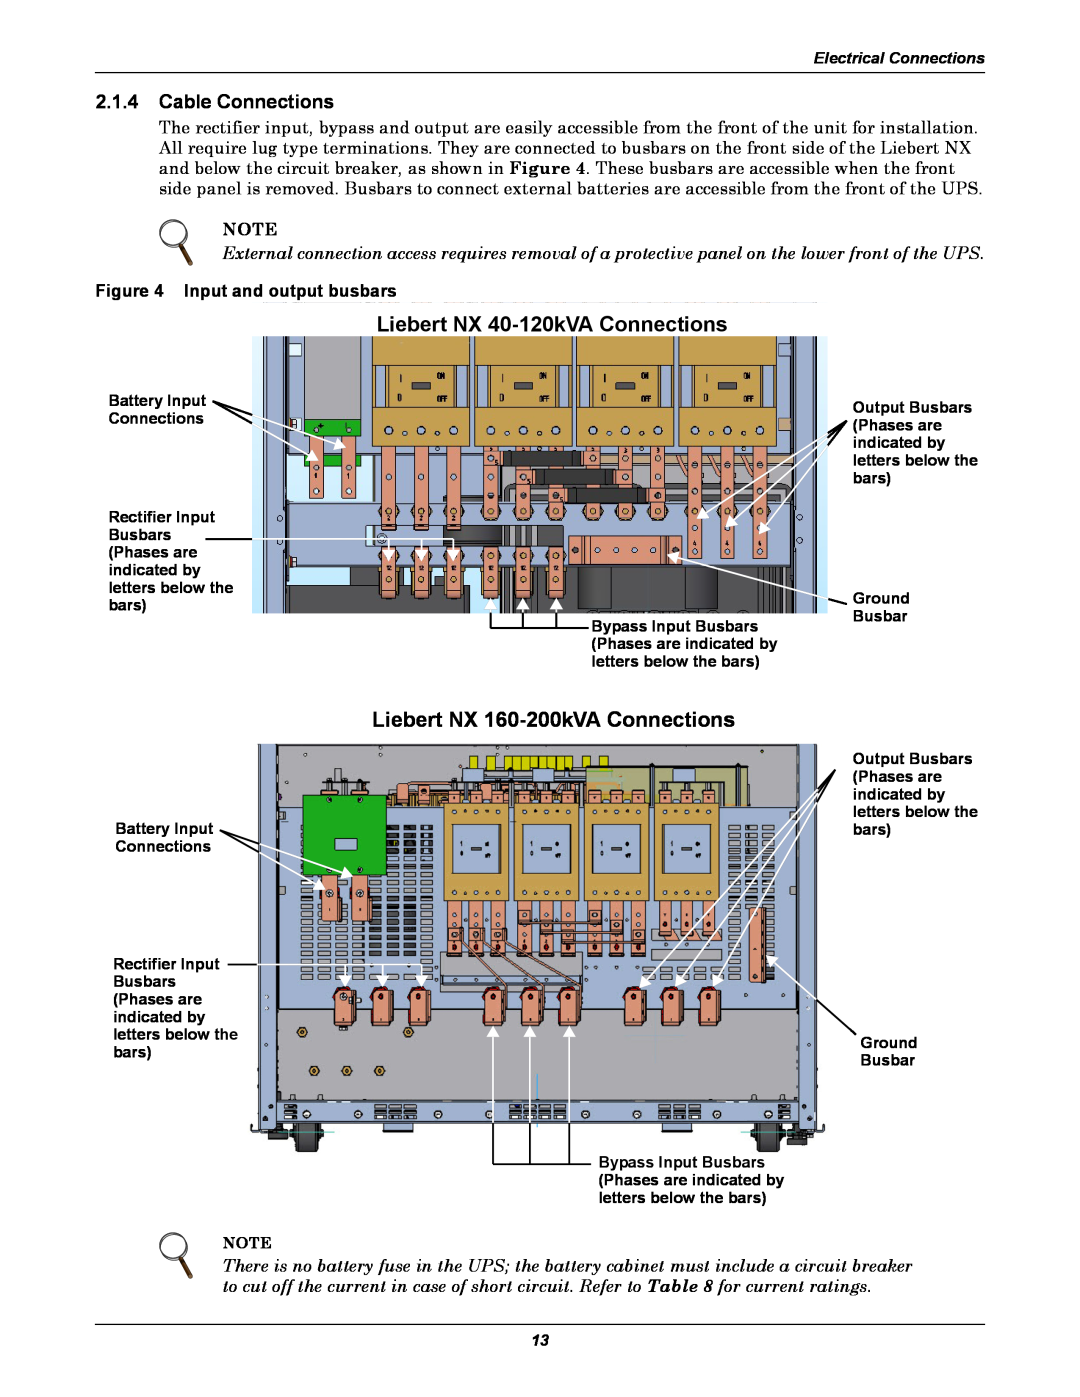 Emerson 480V, 60HZ user manual Liebert NX 40-120kVAConnections, Liebert NX 160-200kVAConnections, 2.1.4Cable Connections 